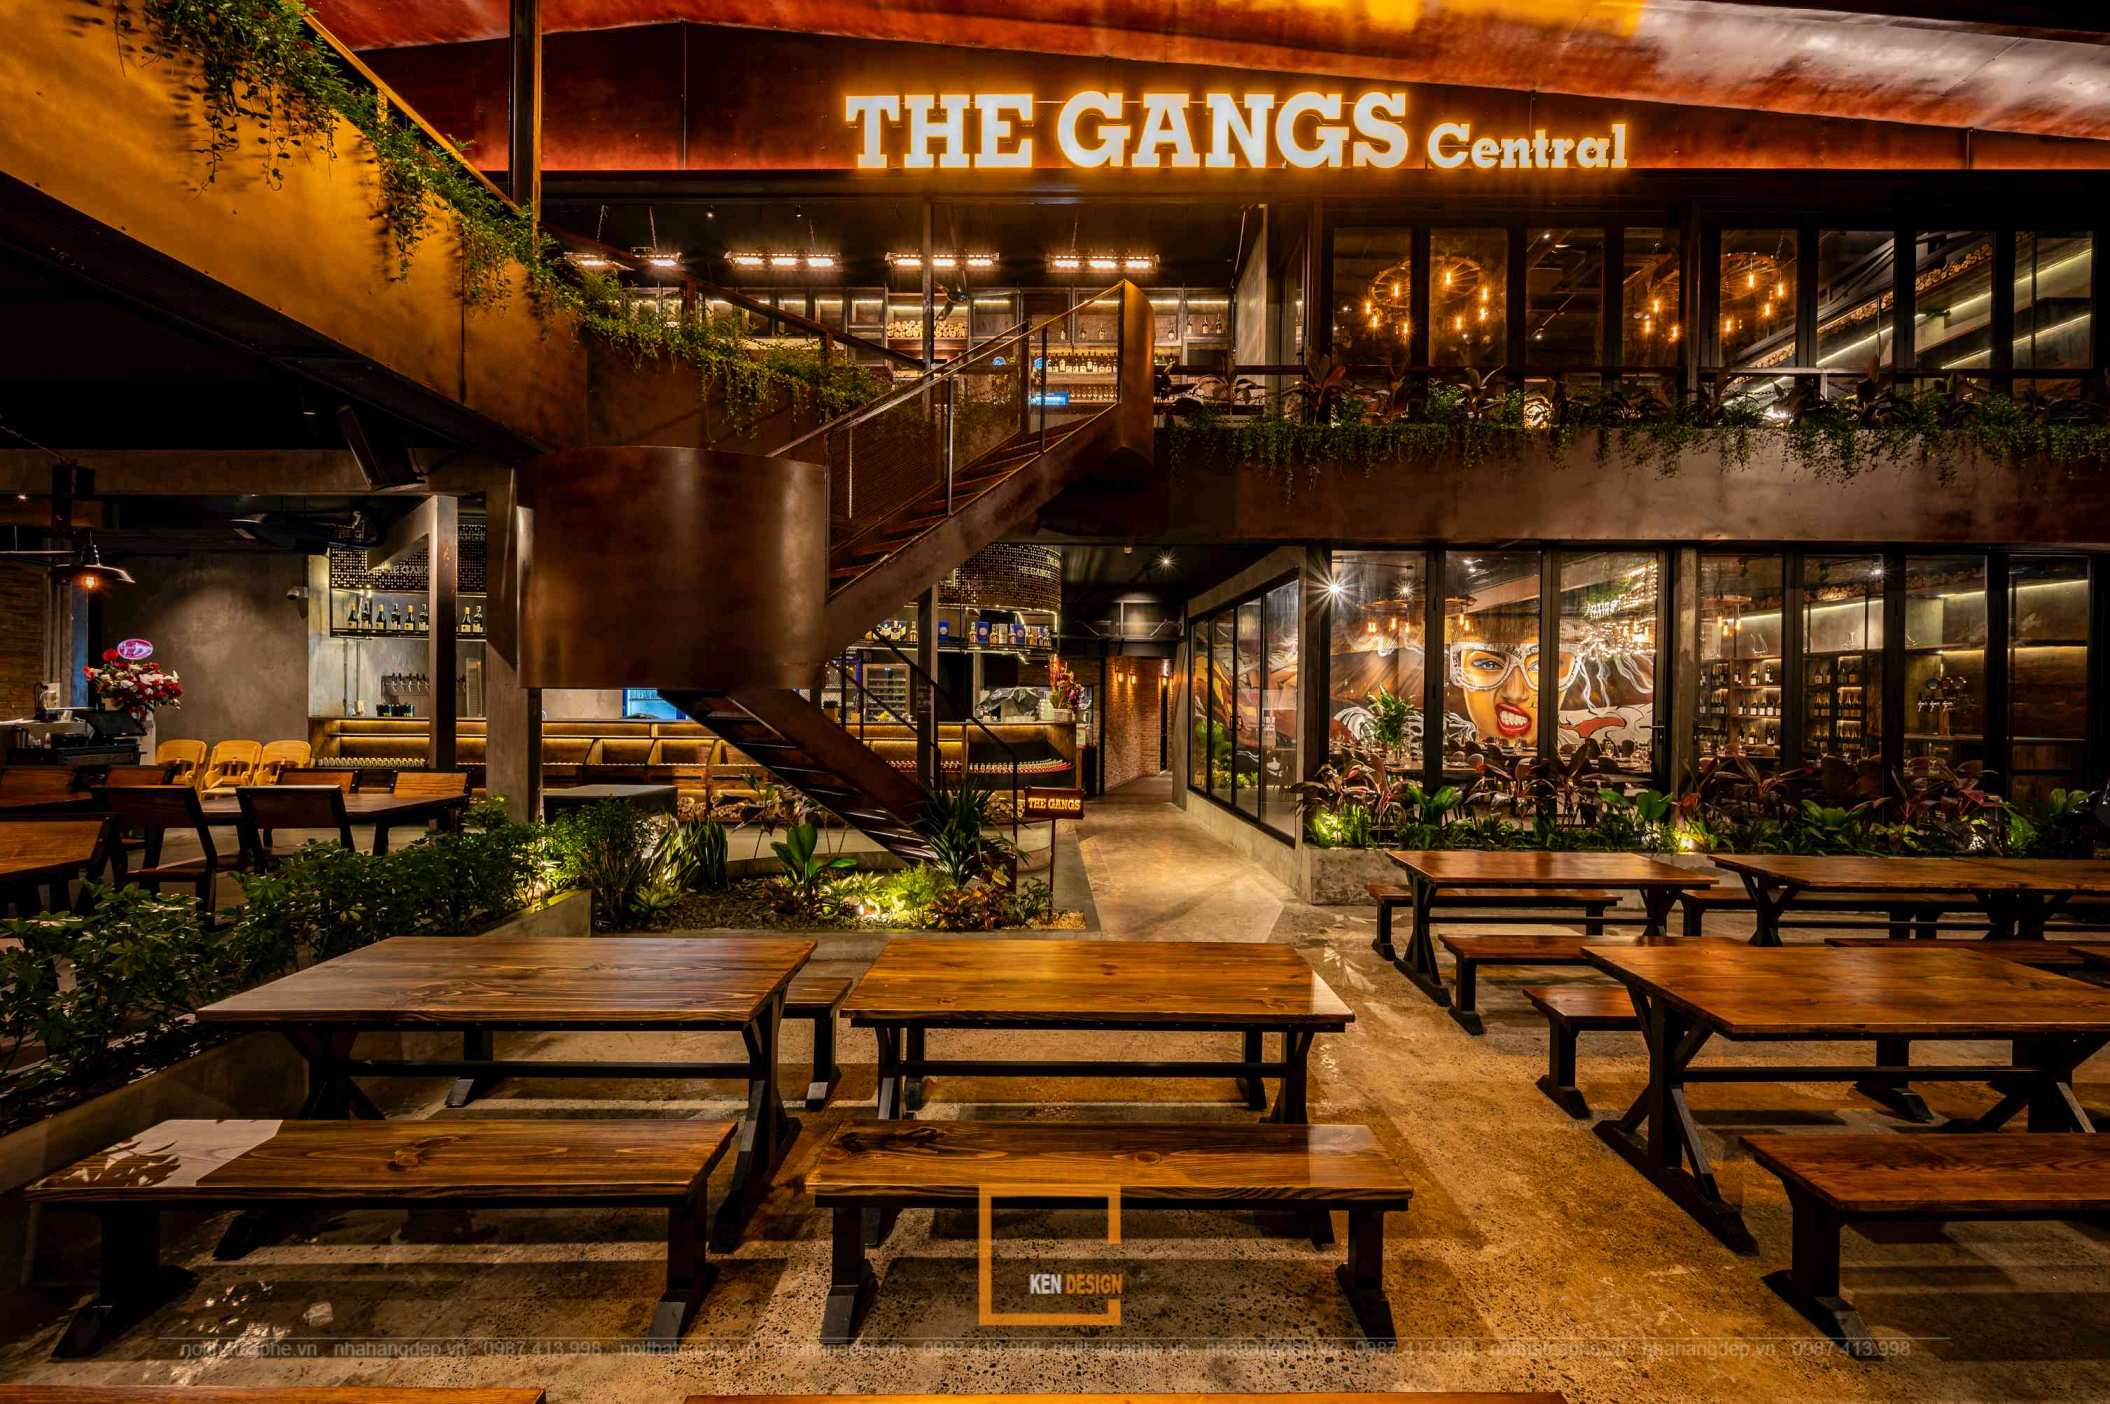 hoàn thiện thi công nhà hàng The Gangs Central